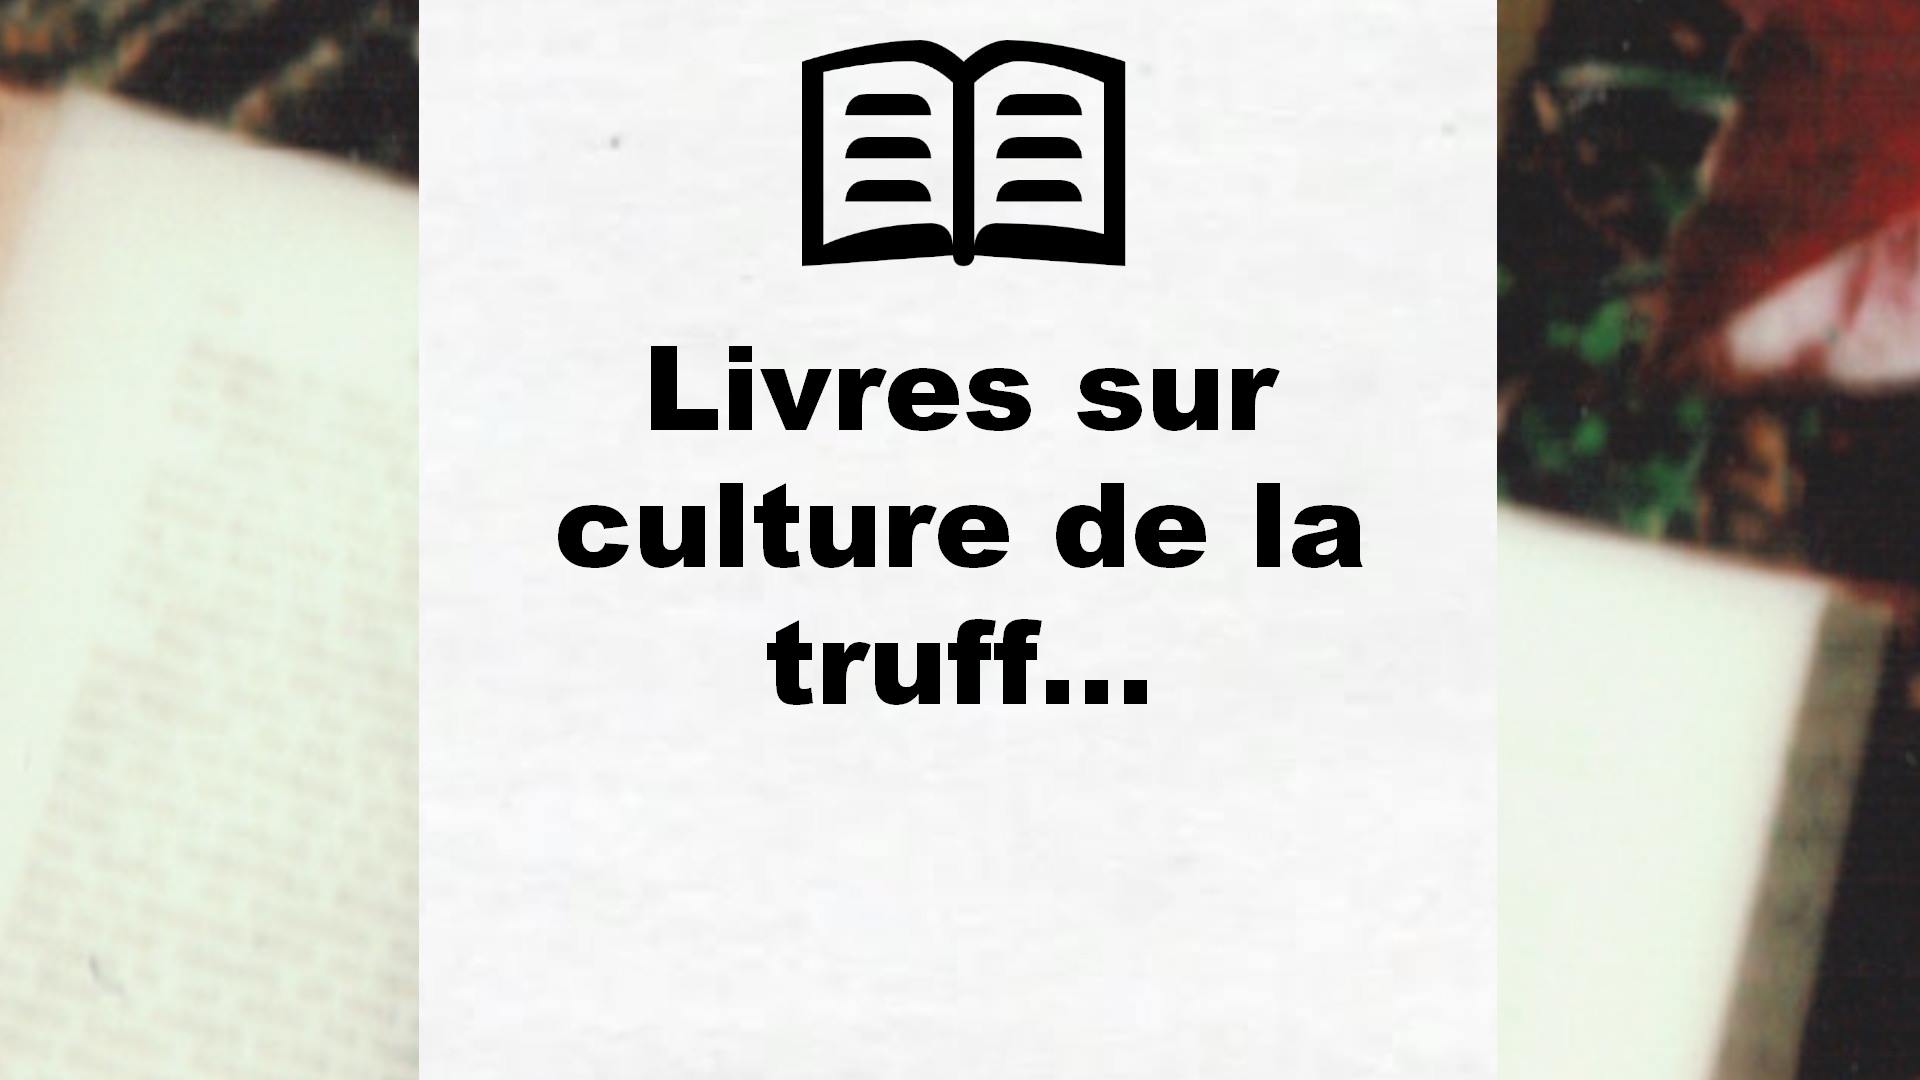 Livres sur culture de la truffe